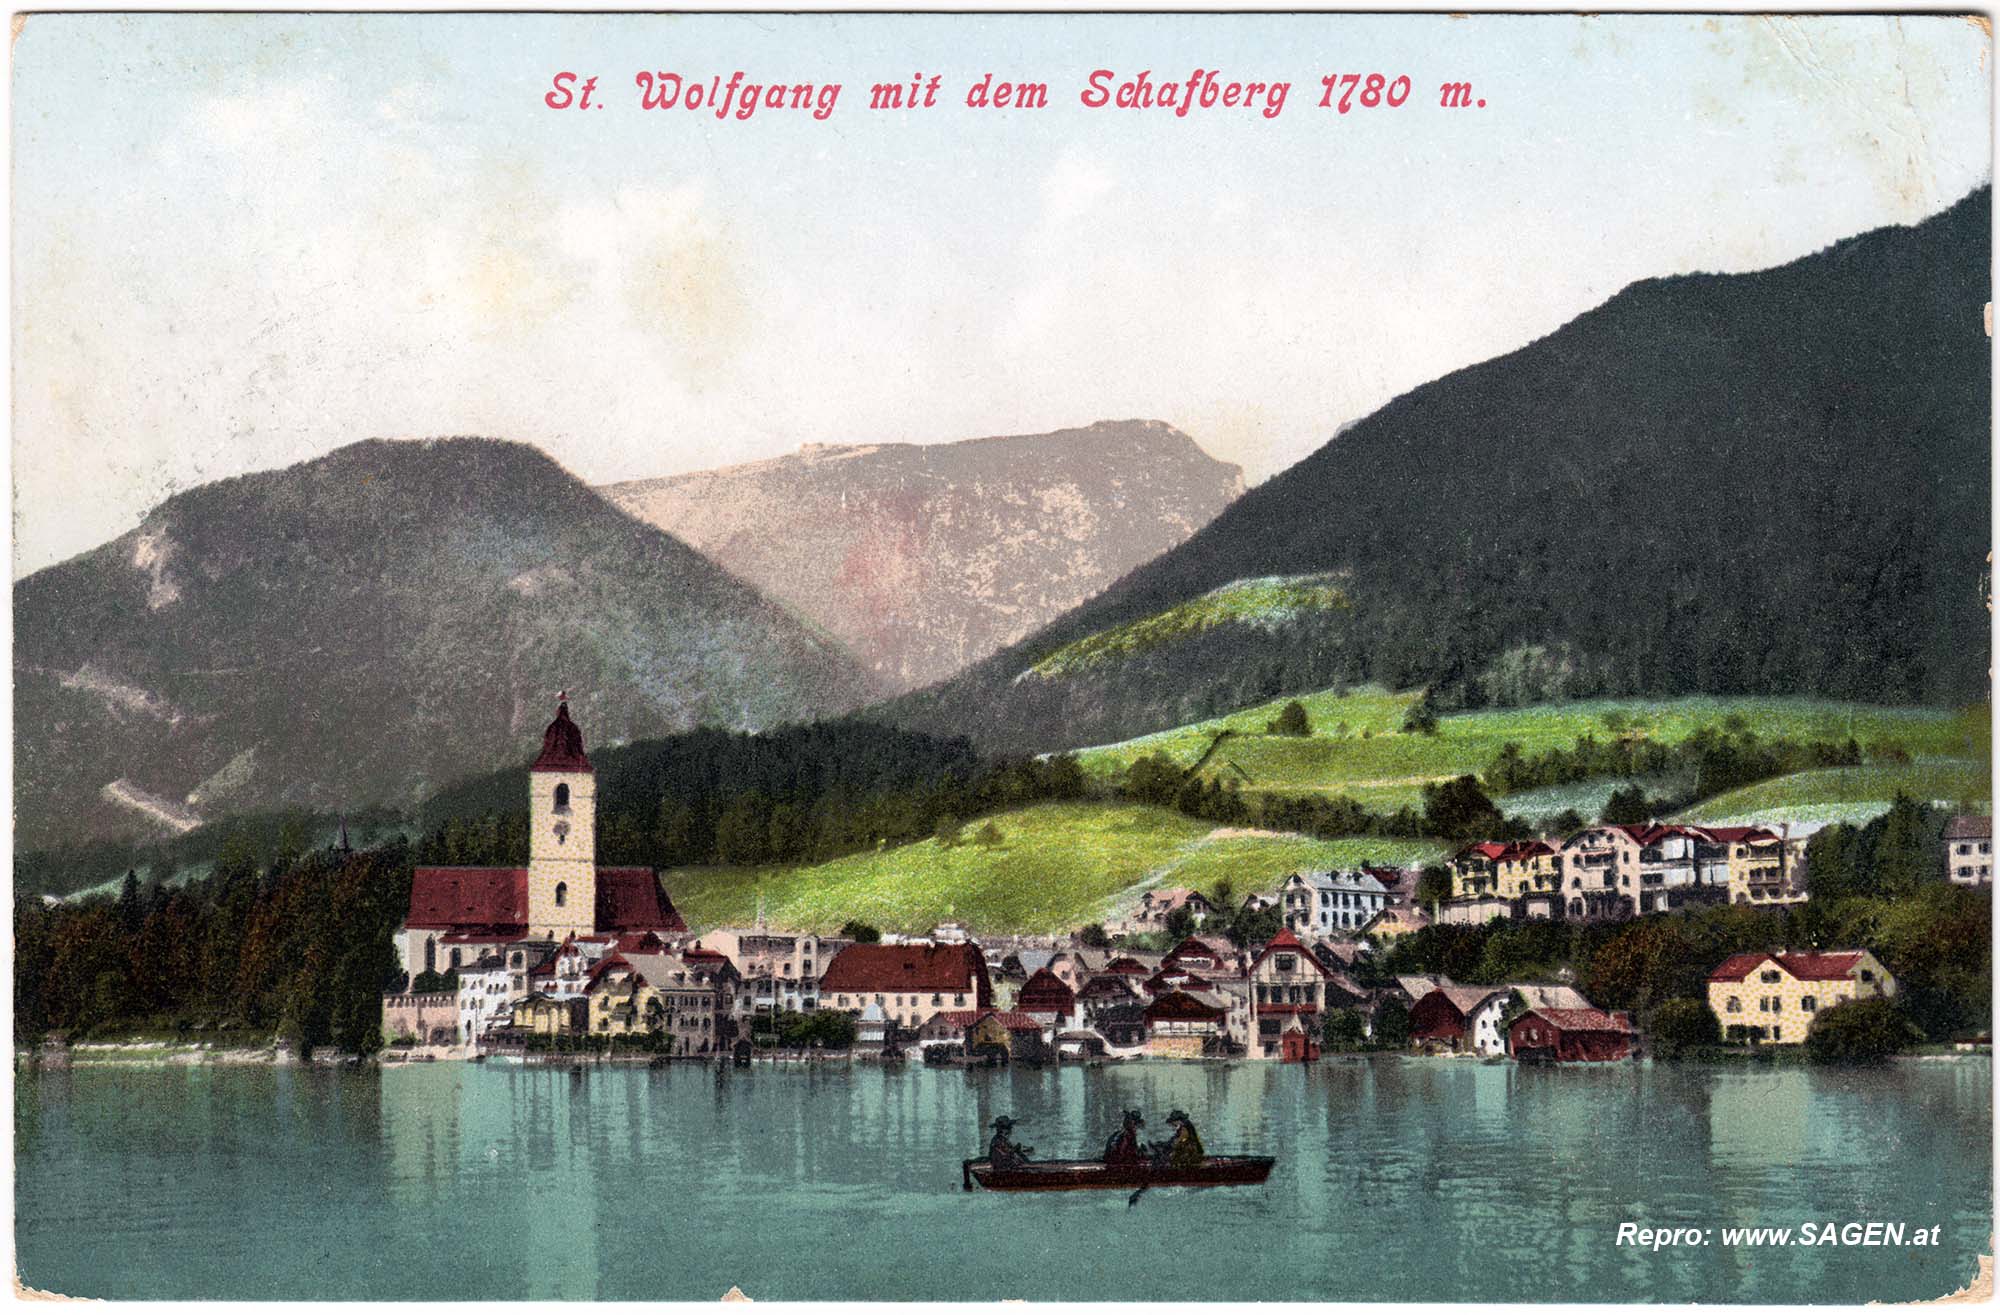 St. Wolfgang mit dem Schafberg im Jahr 1906